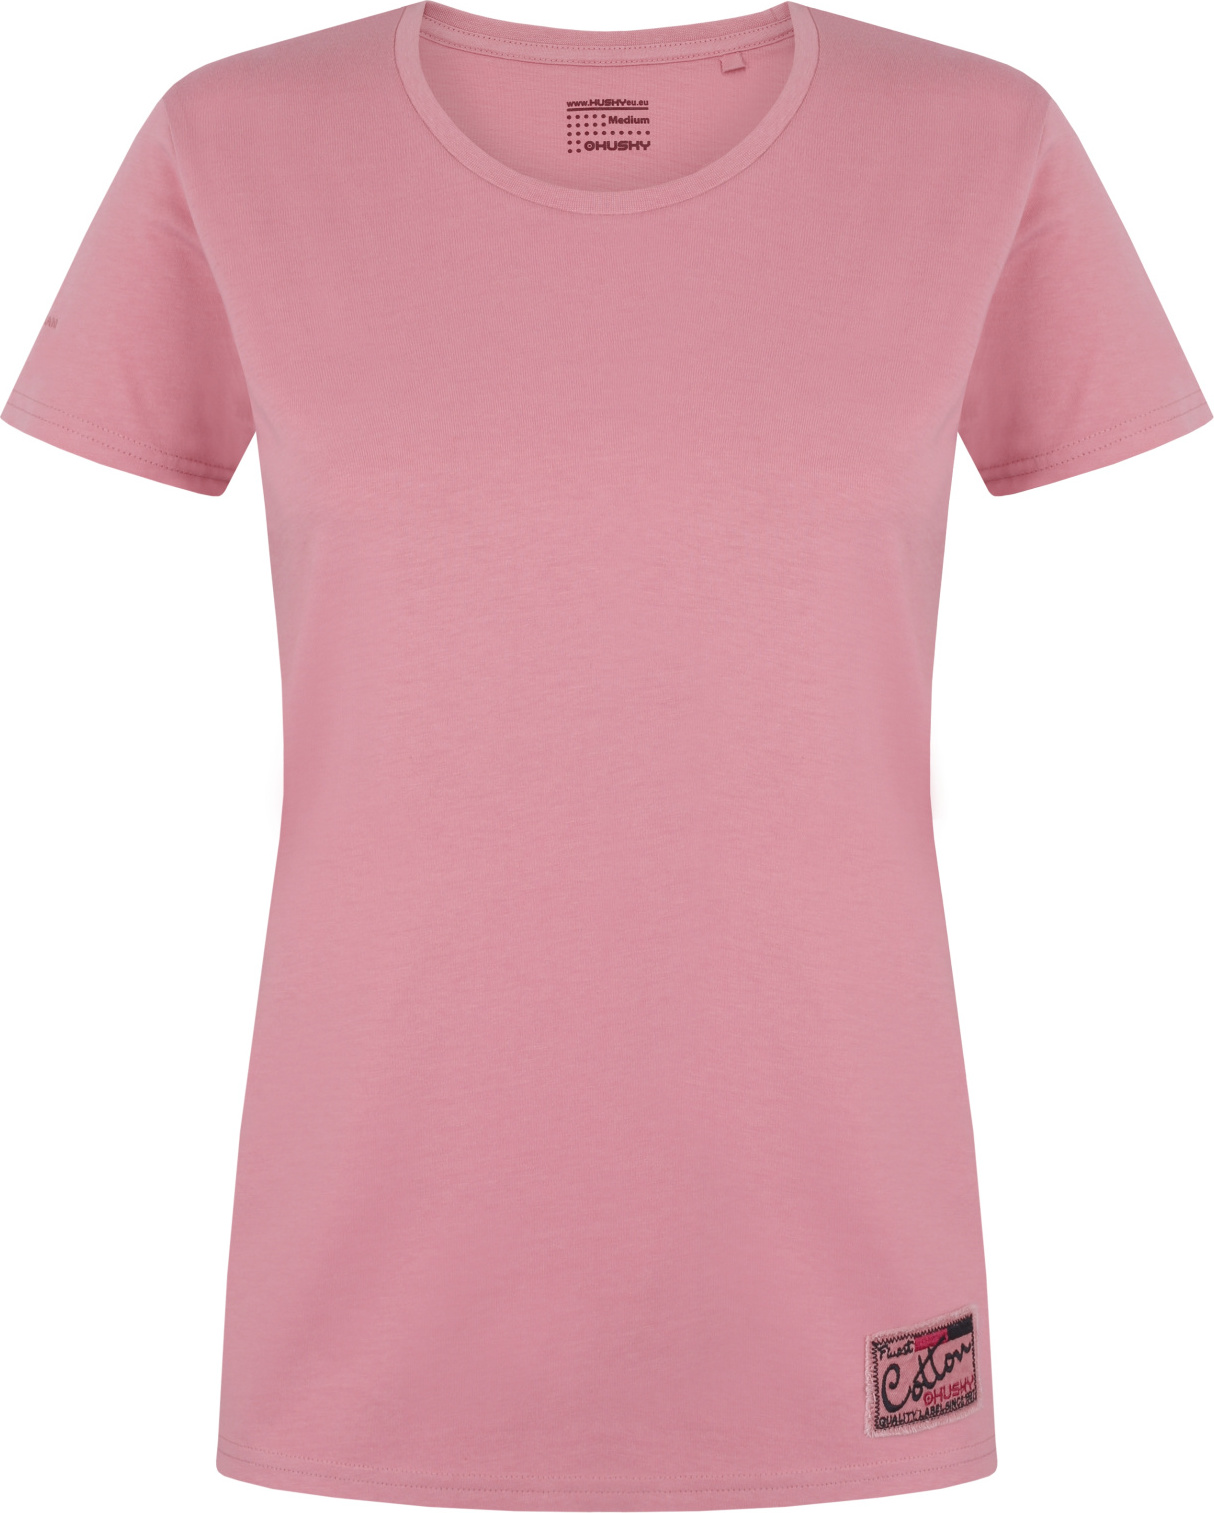 Dámské bavlněné triko HUSKY Tee Base růžové Velikost: M